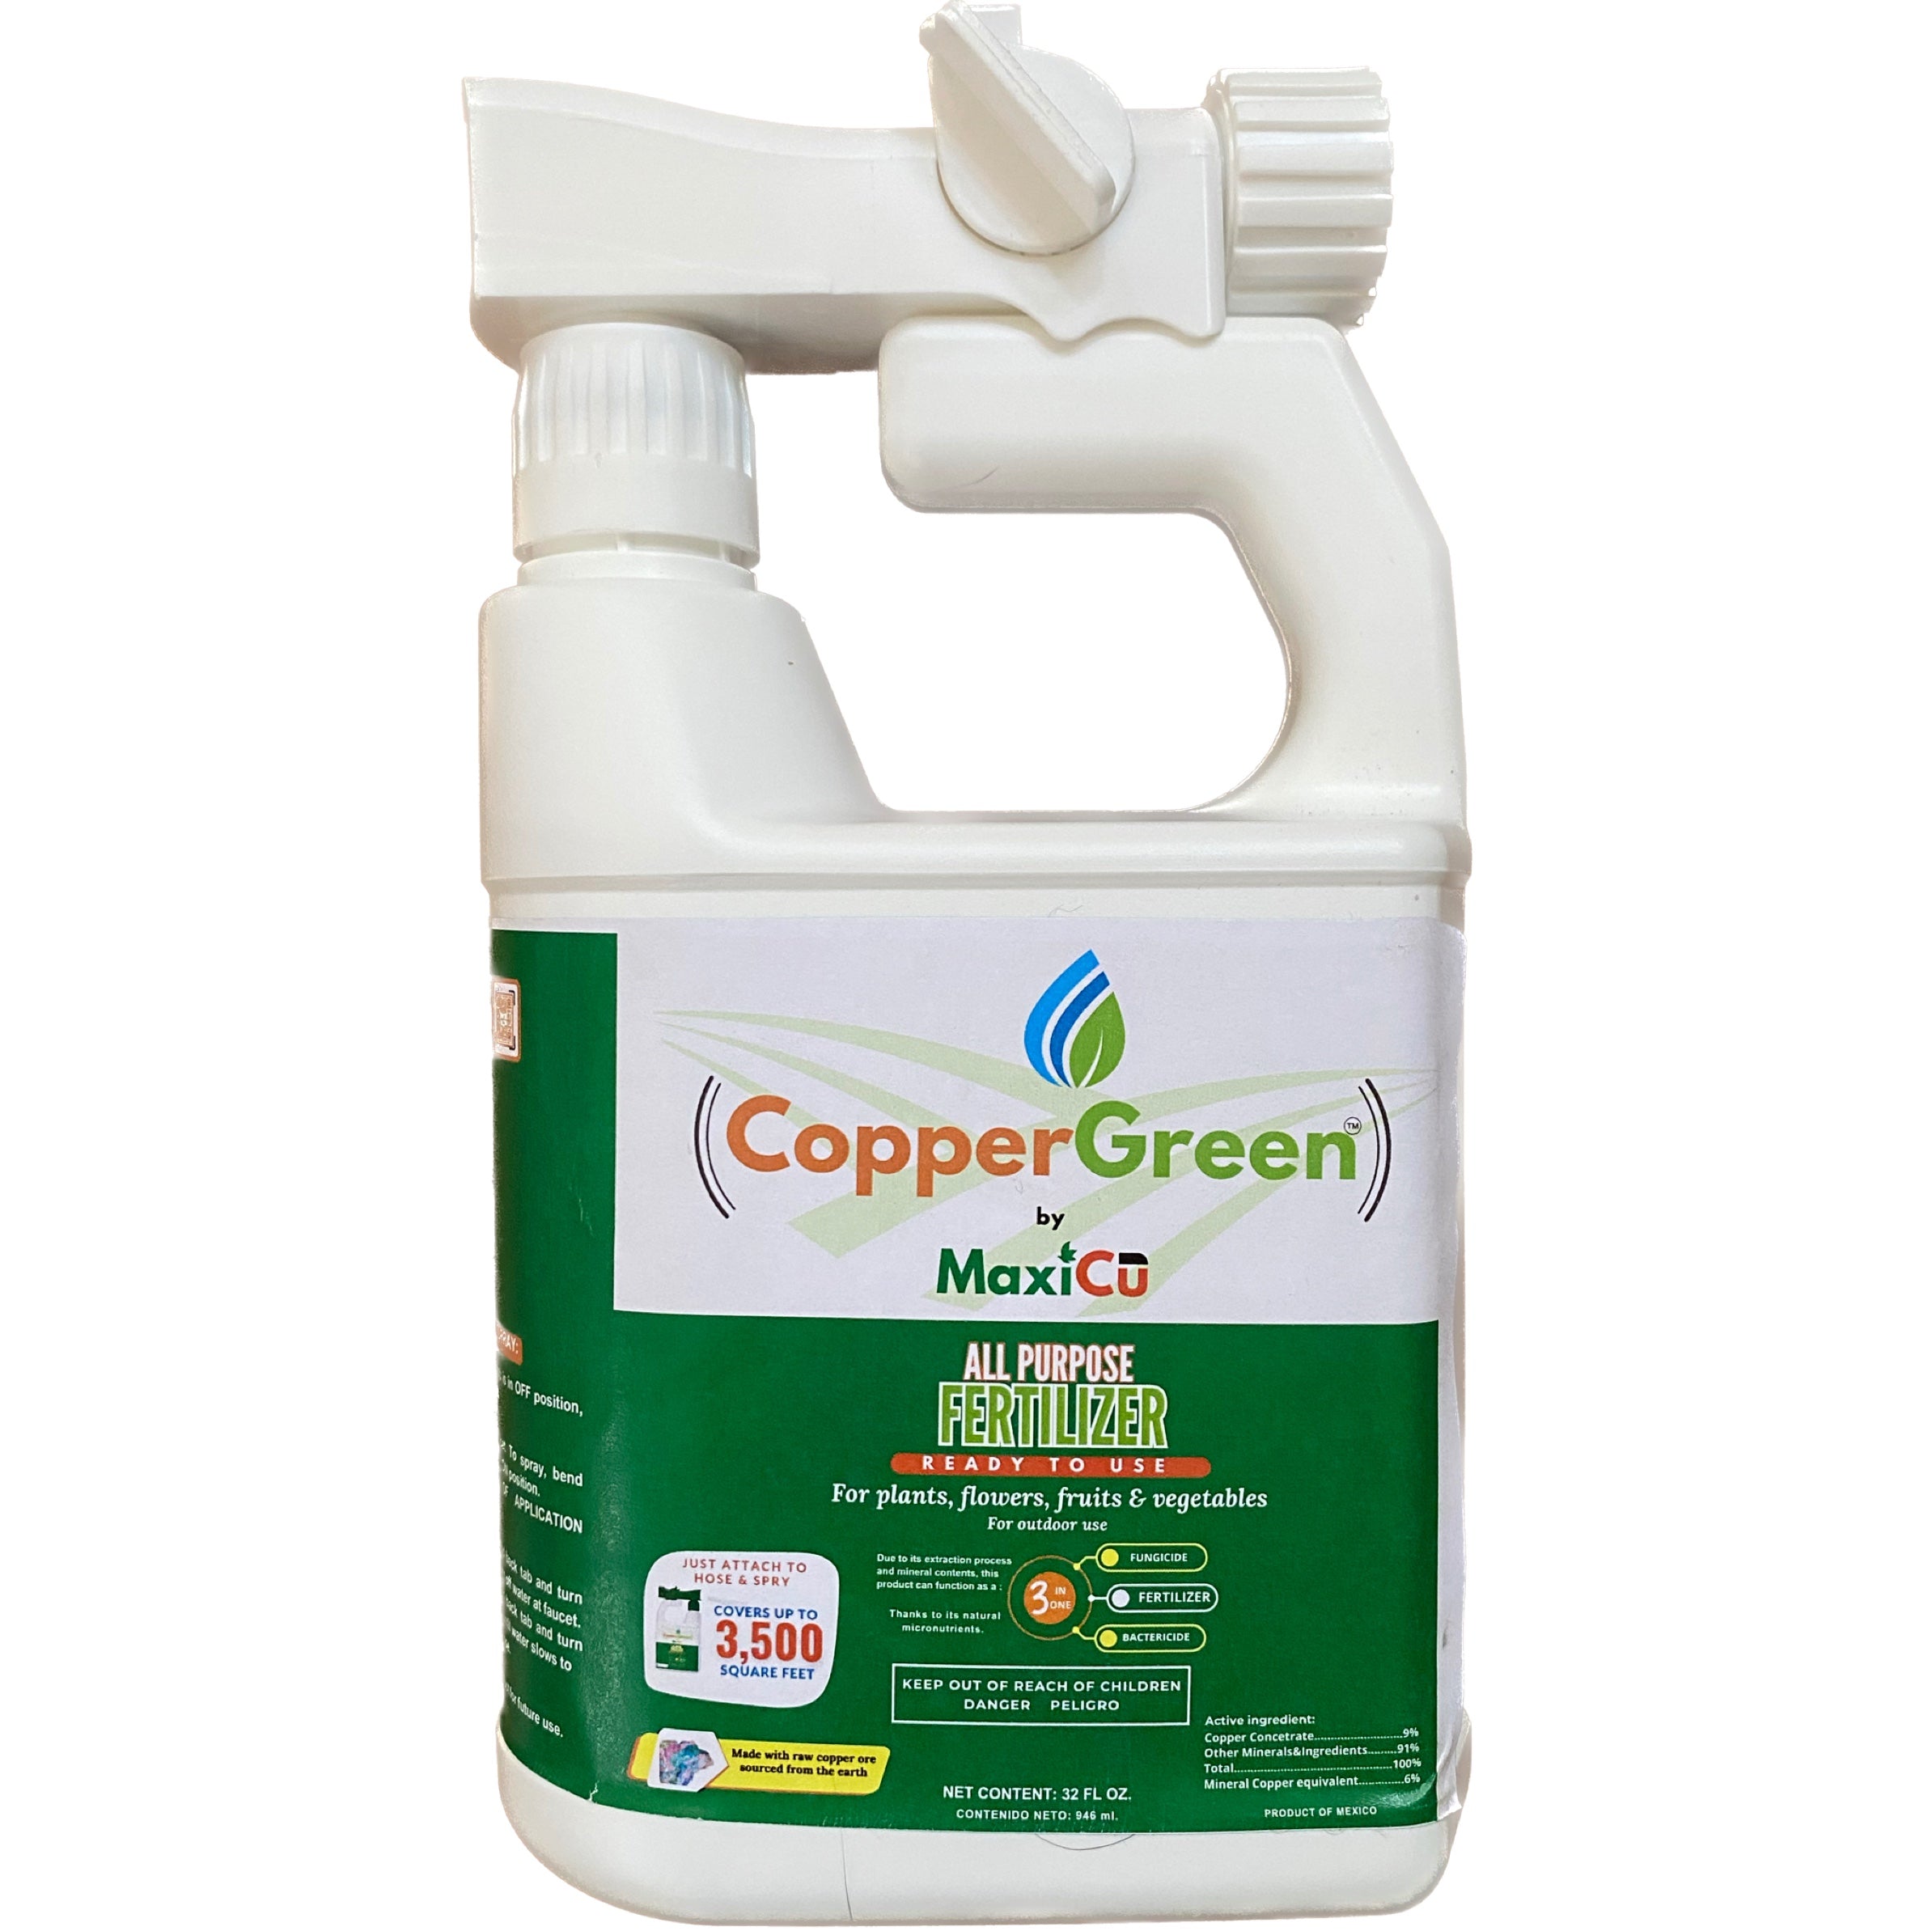 CopperGreen Hose End Spray Fertilizer front side